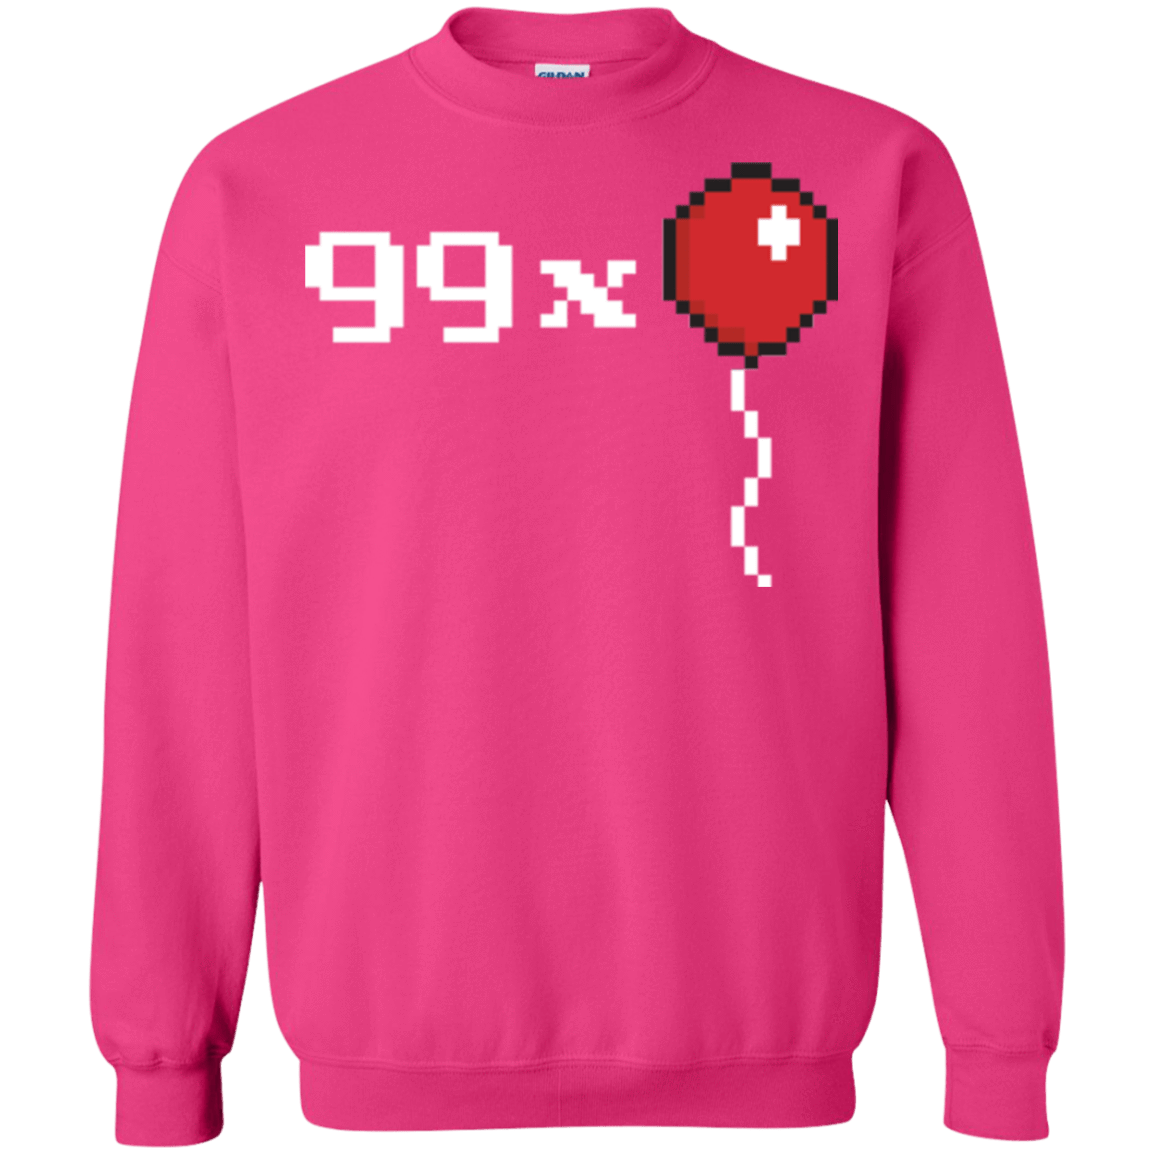 Sweatshirts Heliconia / Small 99x Balloon Crewneck Sweatshirt